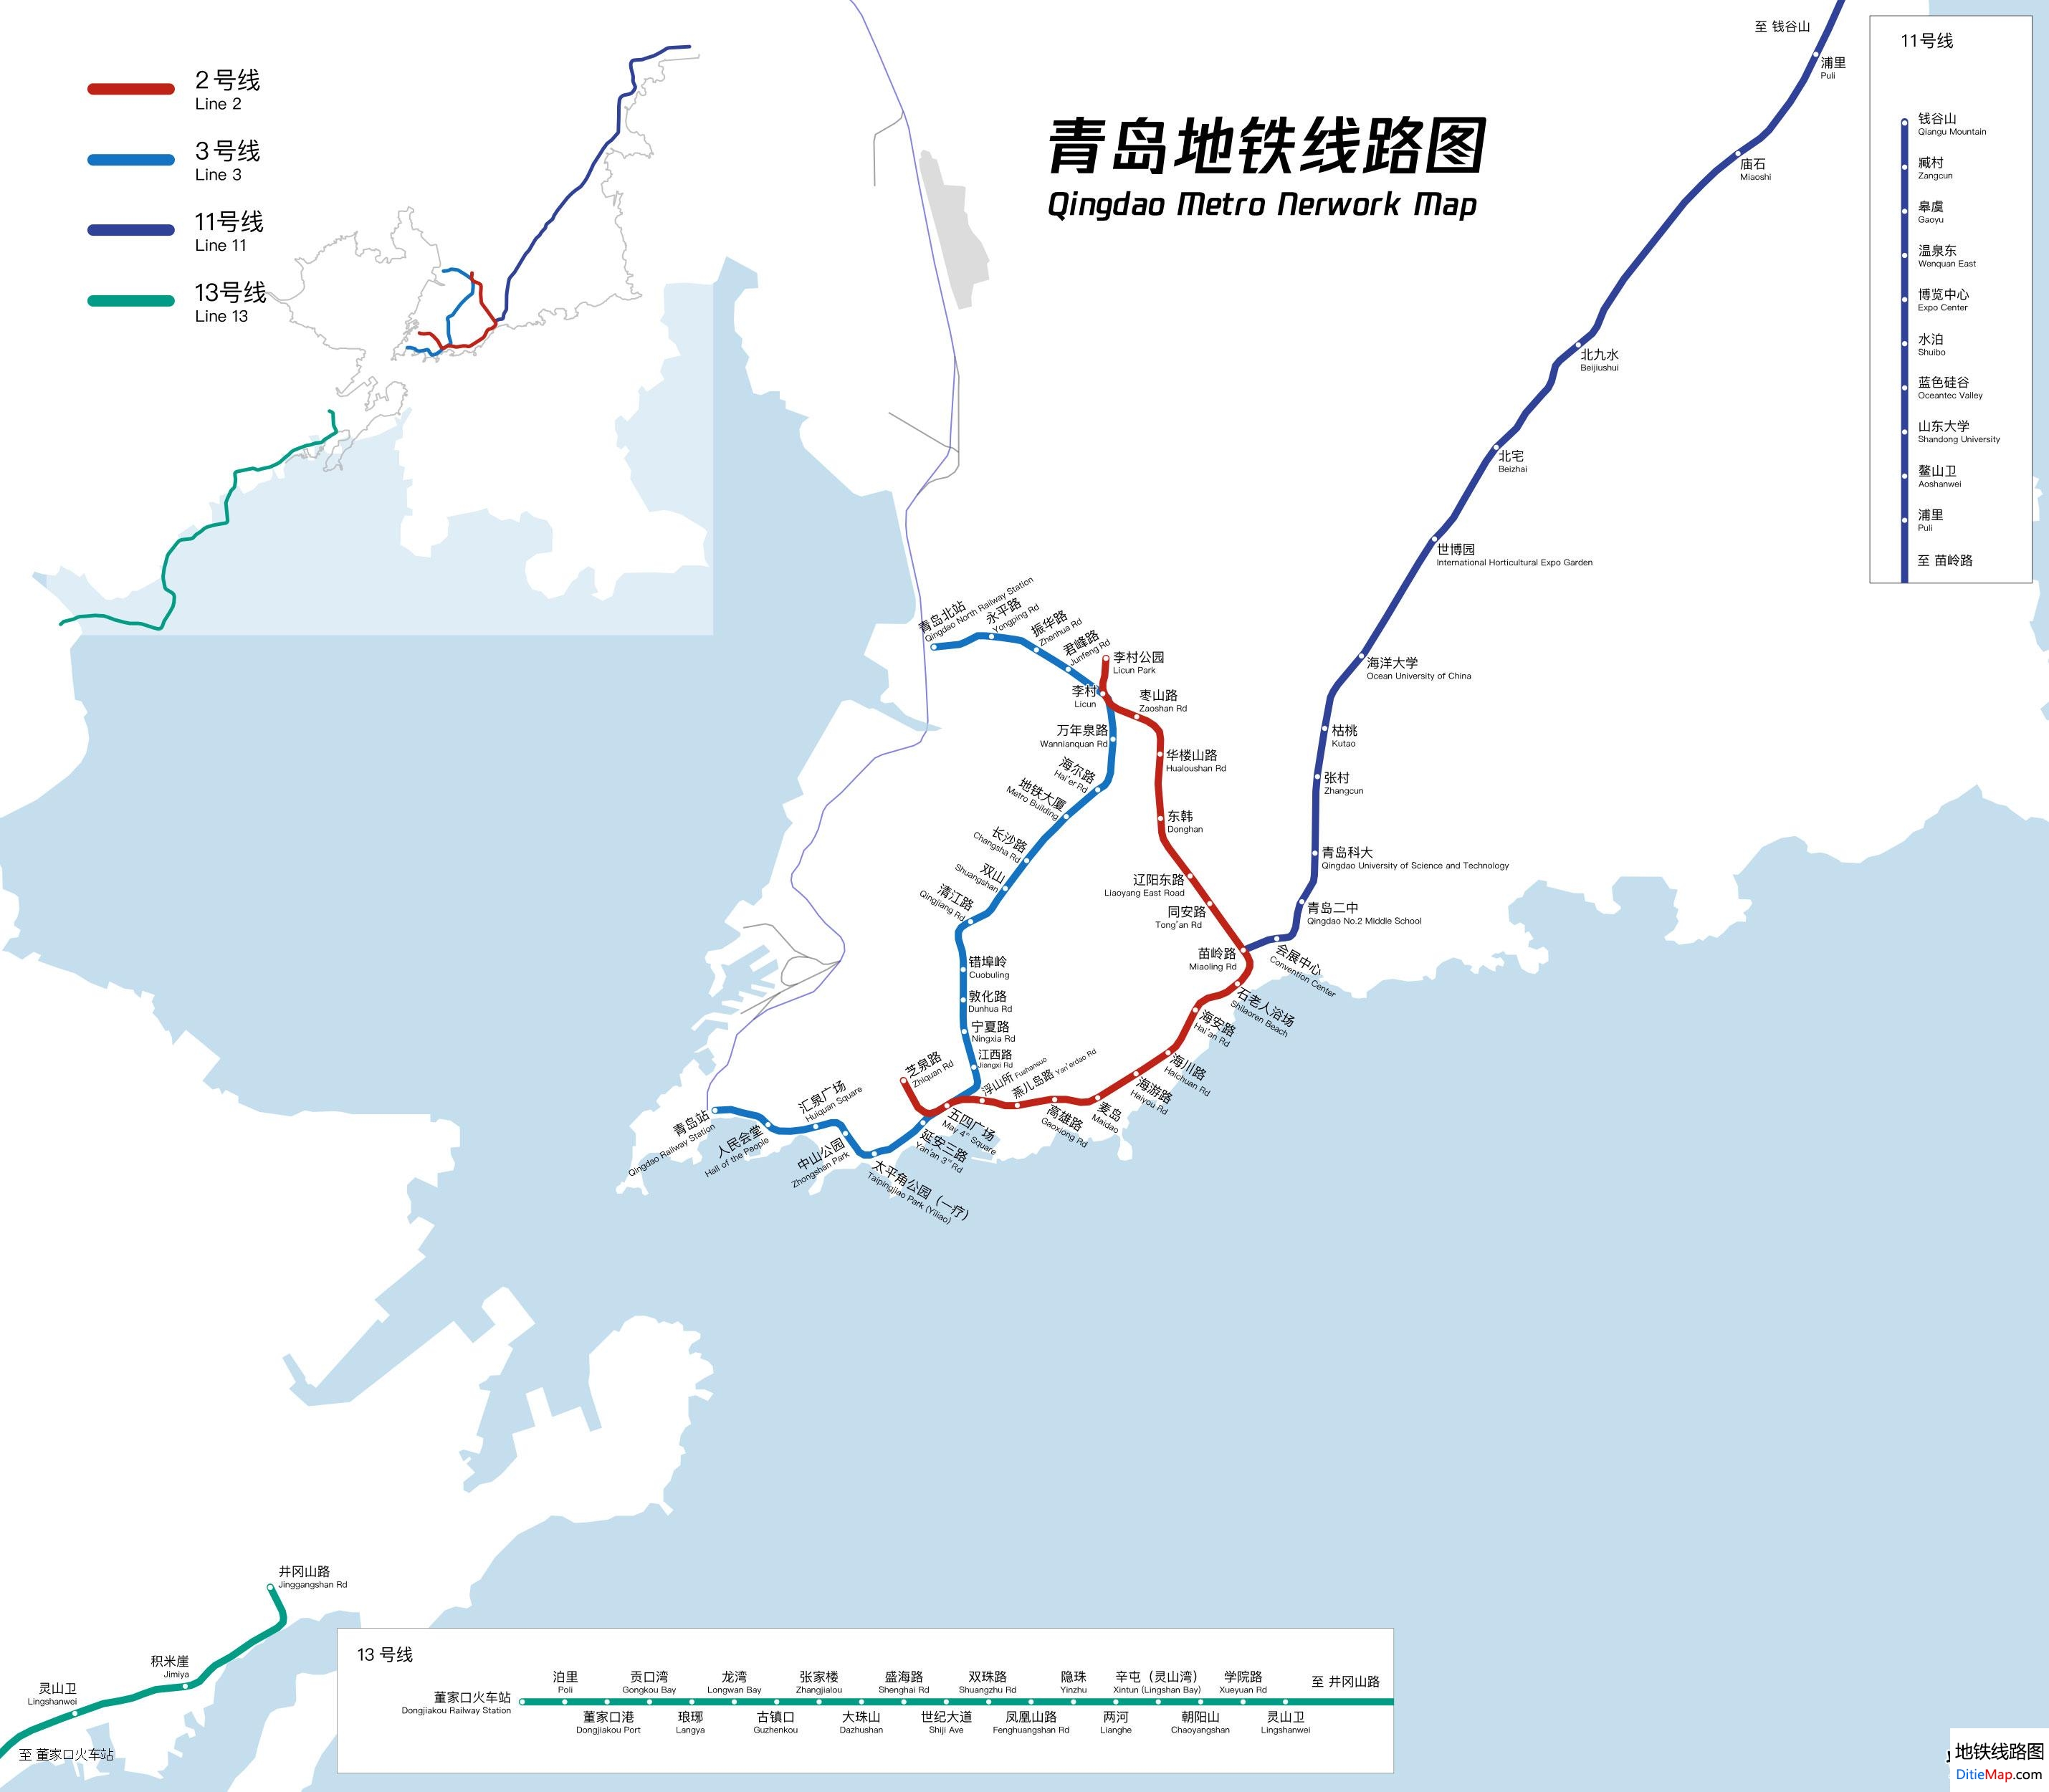 (注:点击图片可查看下载大图) ※线网规划图终以青岛地铁建设实际情况